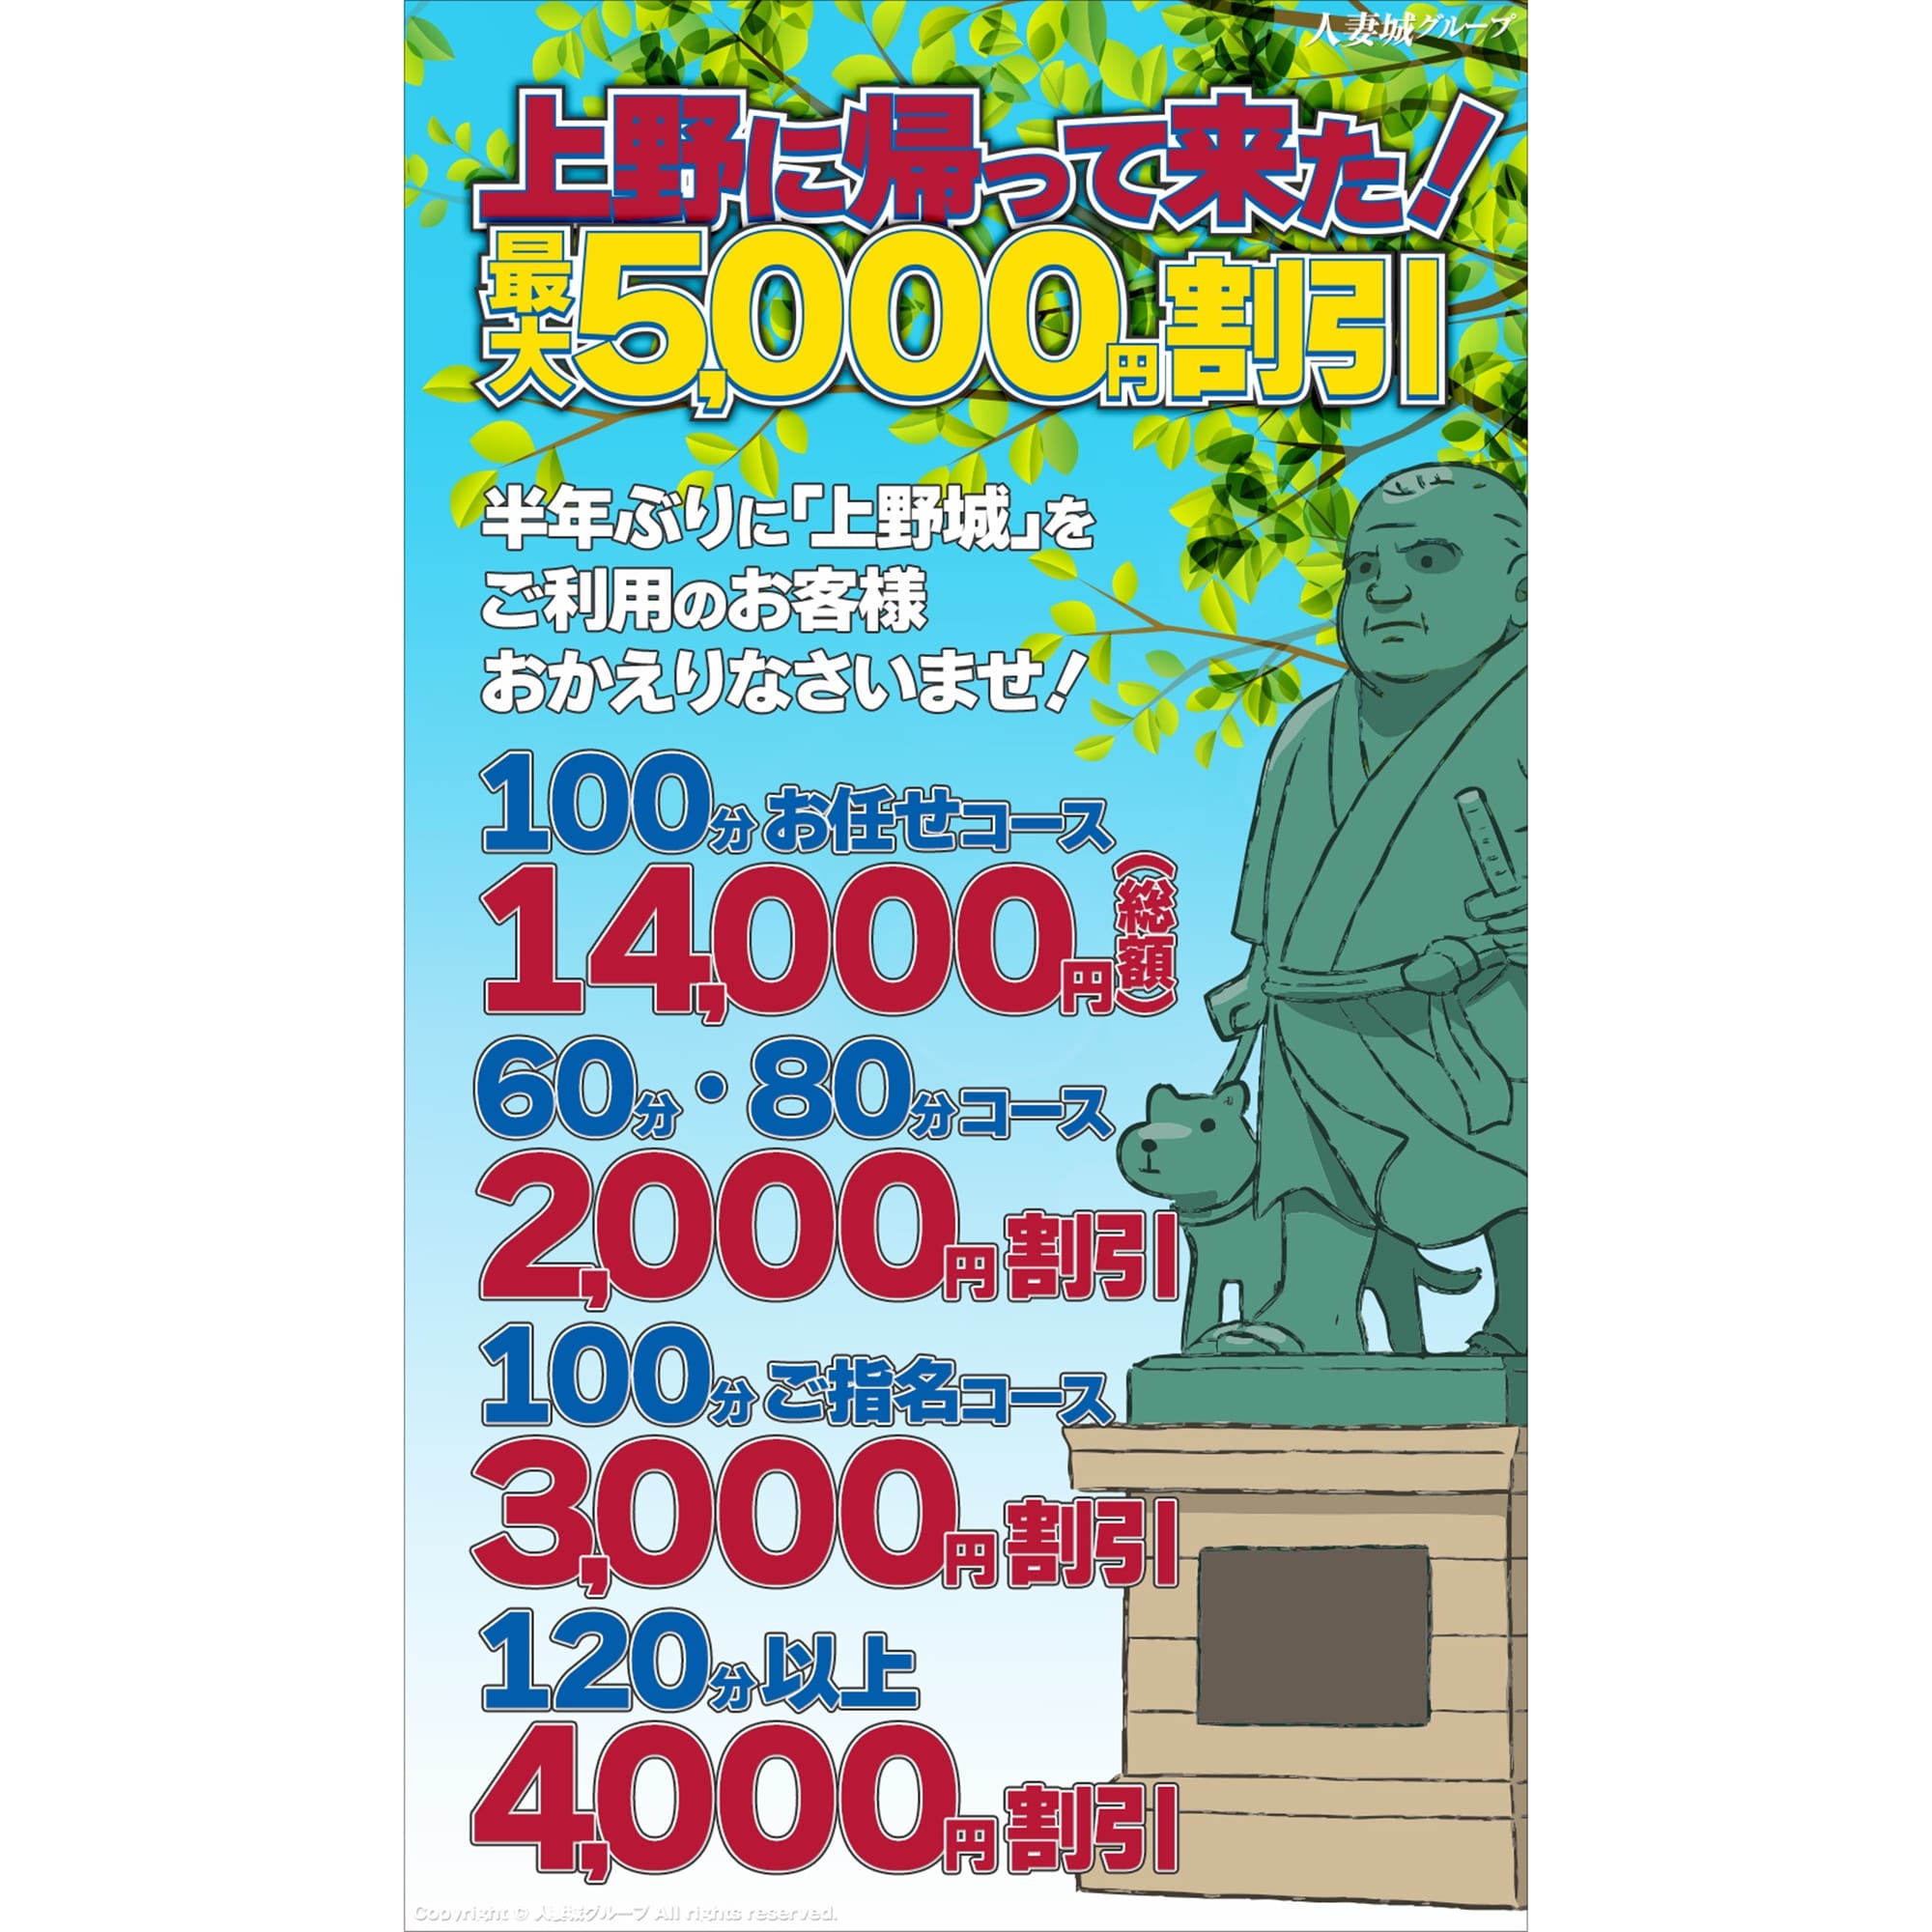 「上野に帰って来た!」05/08(水) 18:39 | 上野人妻城のお得なニュース